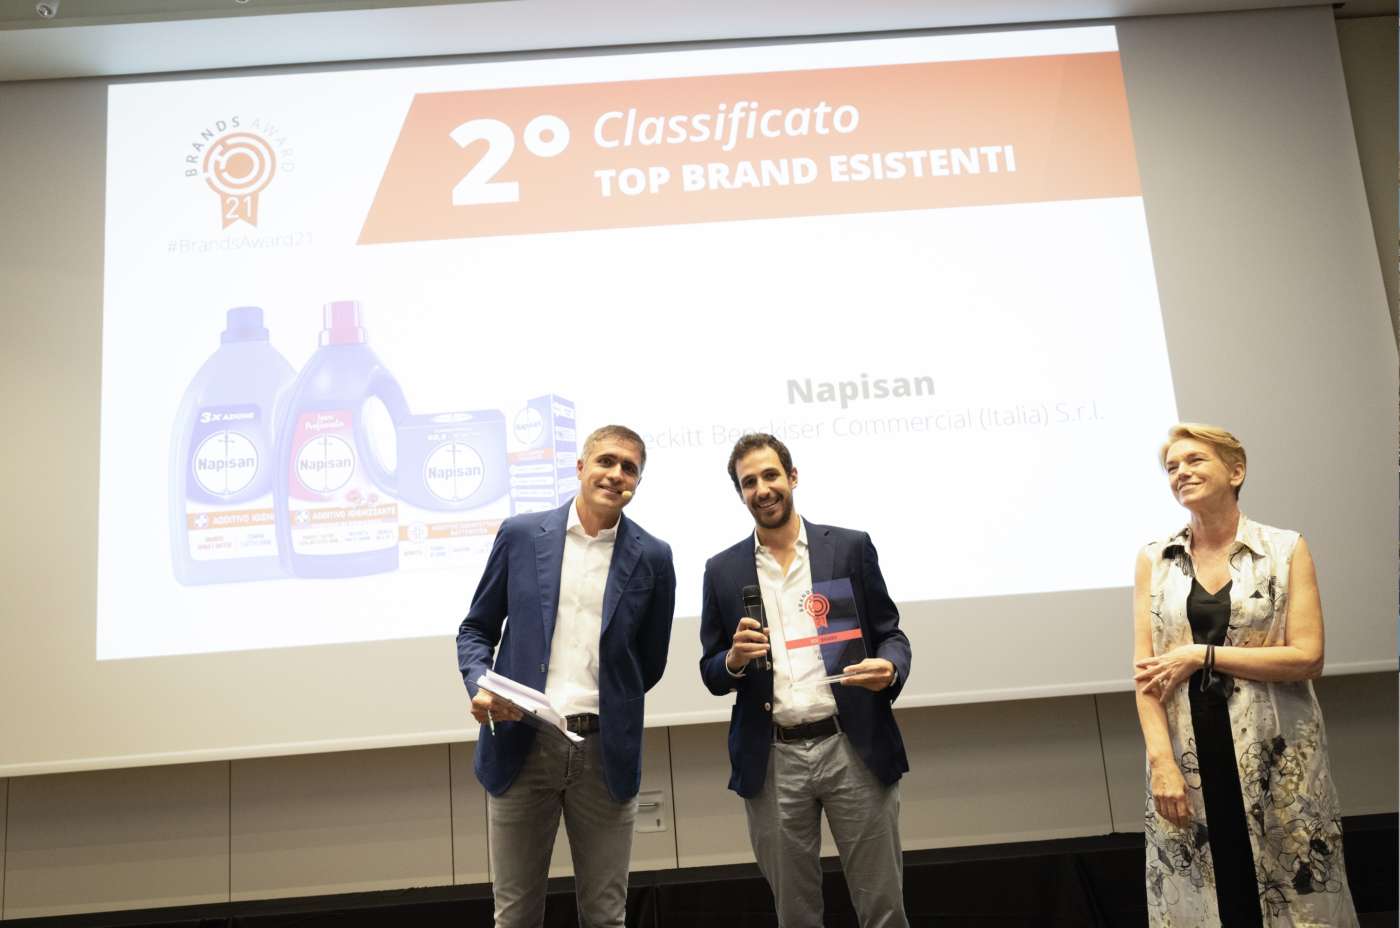 Brands Award 2021 Napisan topbrand 2 classificato esistenti